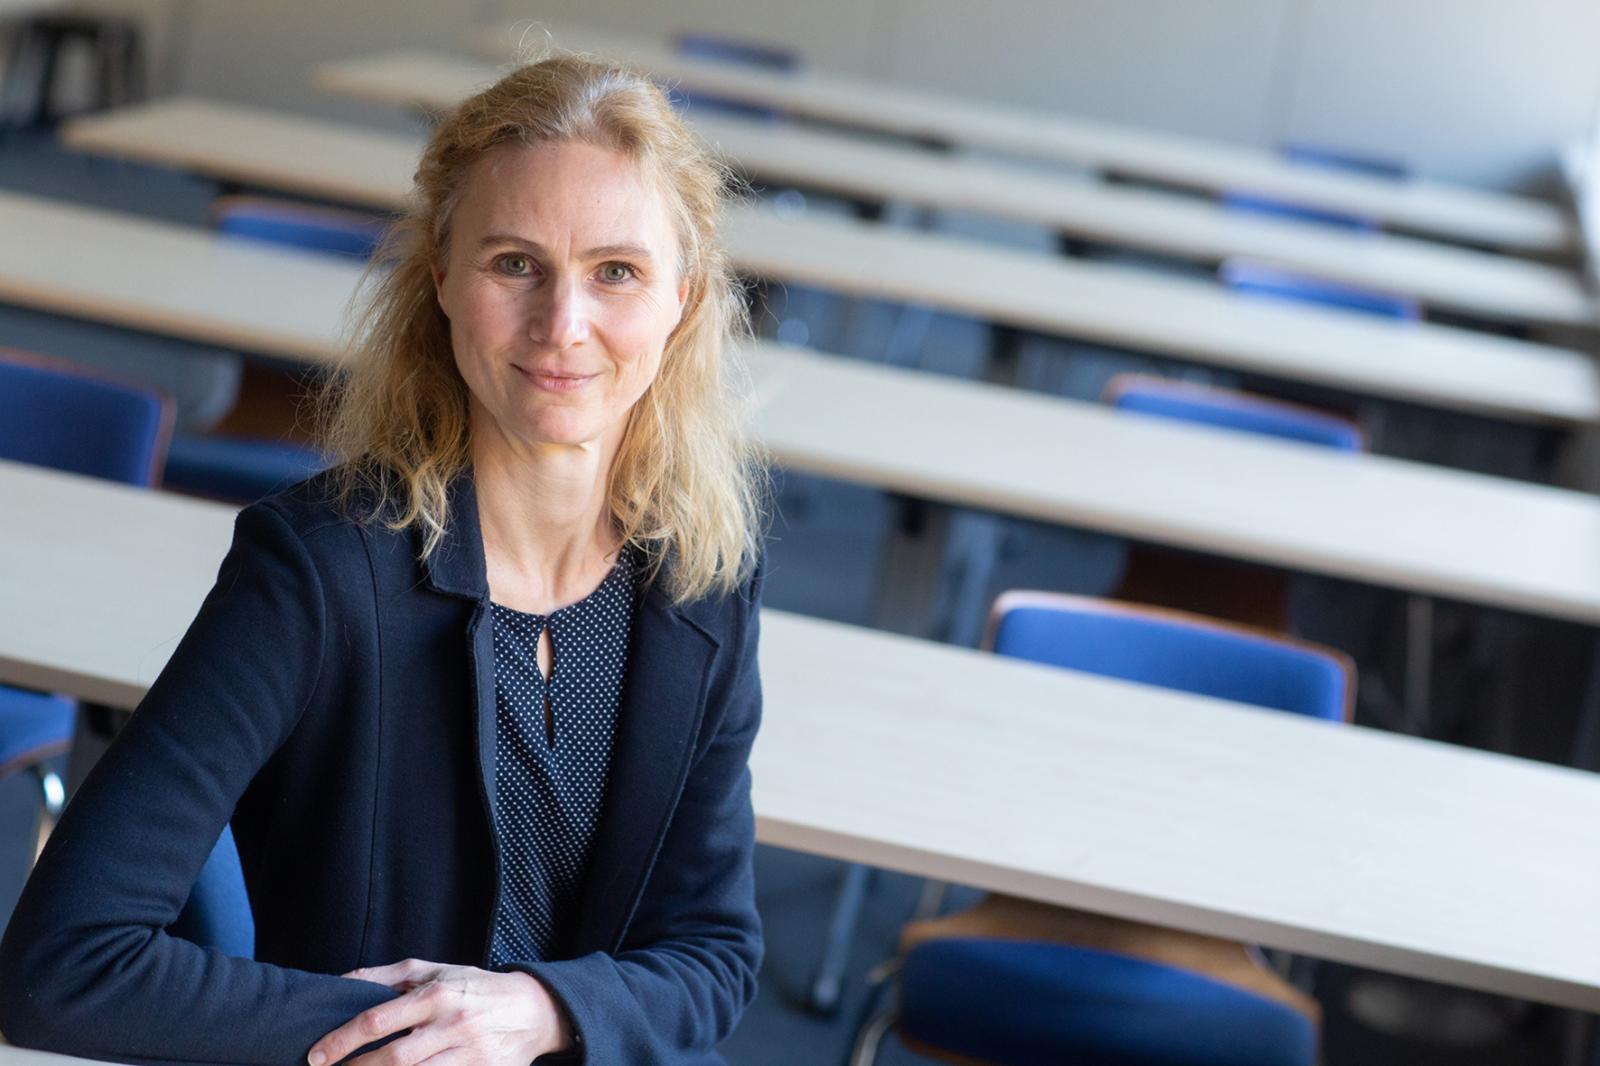 Prof. Dr. Birgit Möller-Kallista vom Fachbereich Sozialwesen der FH Münster lehrt und forscht unter anderem zum Thema Geschlechtervielfalt. (Foto: FH Münster/Wilfried Gerharz) 